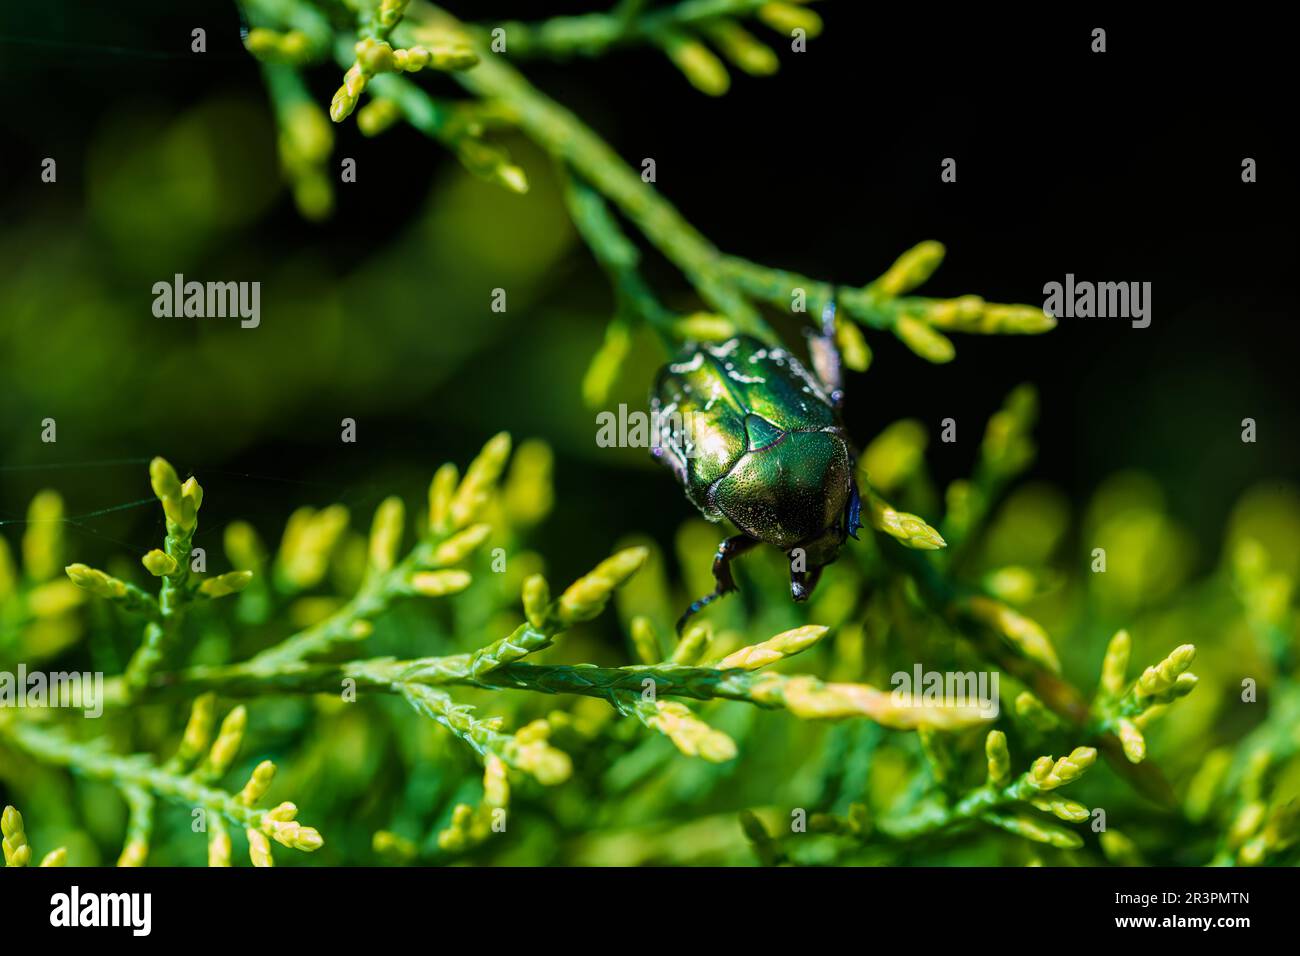 Makroaufnahme eines wunderschönen, metallischen, glänzenden Grün- und Kupferkäfers (Protaetia cuprea) auf grünem Blatt, umgeben von Vegetation im Frühling. Protaetia cupr Stockfoto